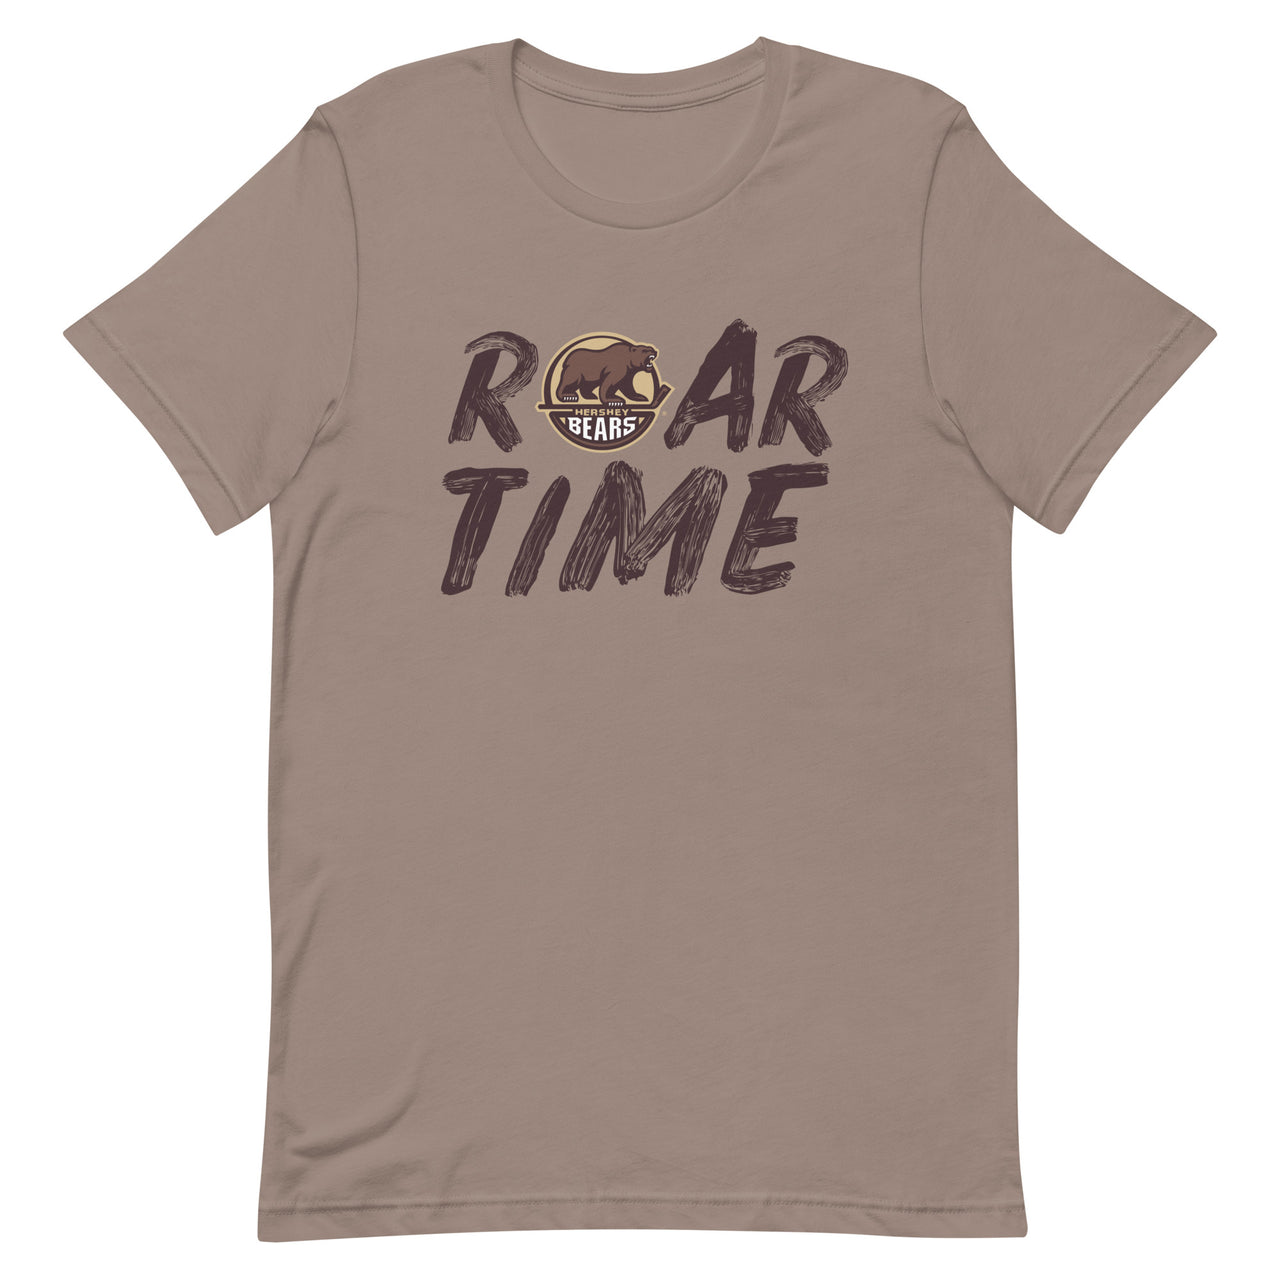 Hershey Bears "Roar Time" Adult Premium Short Sleeve Tee